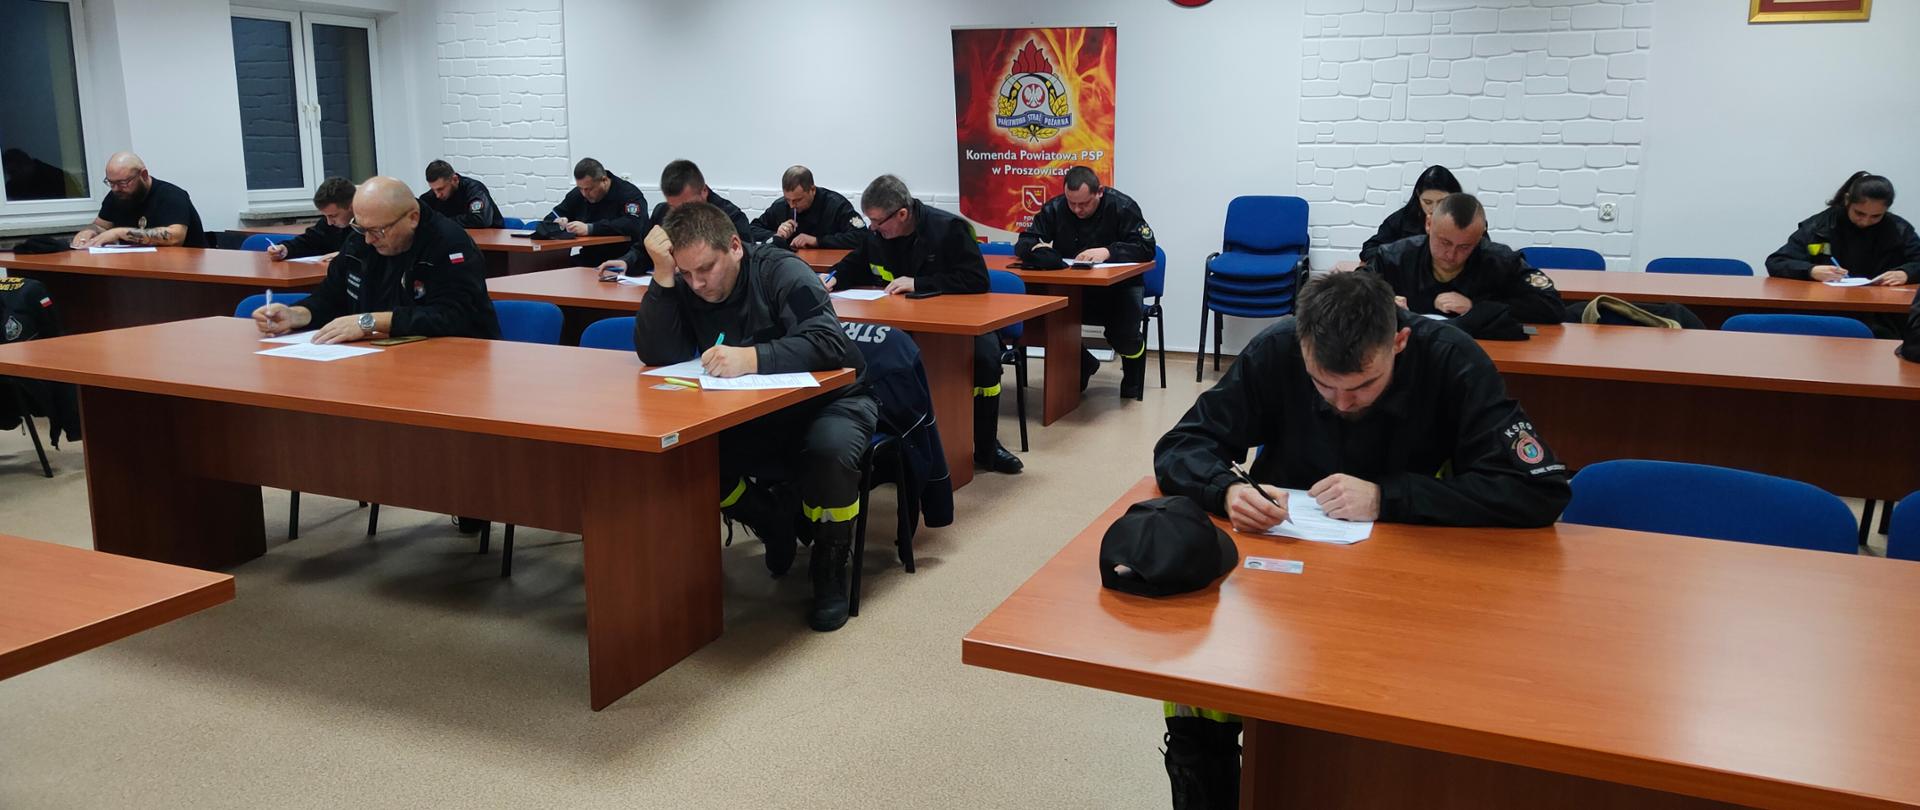 Strażacy siedzą na świetlicy i piszą egzamin